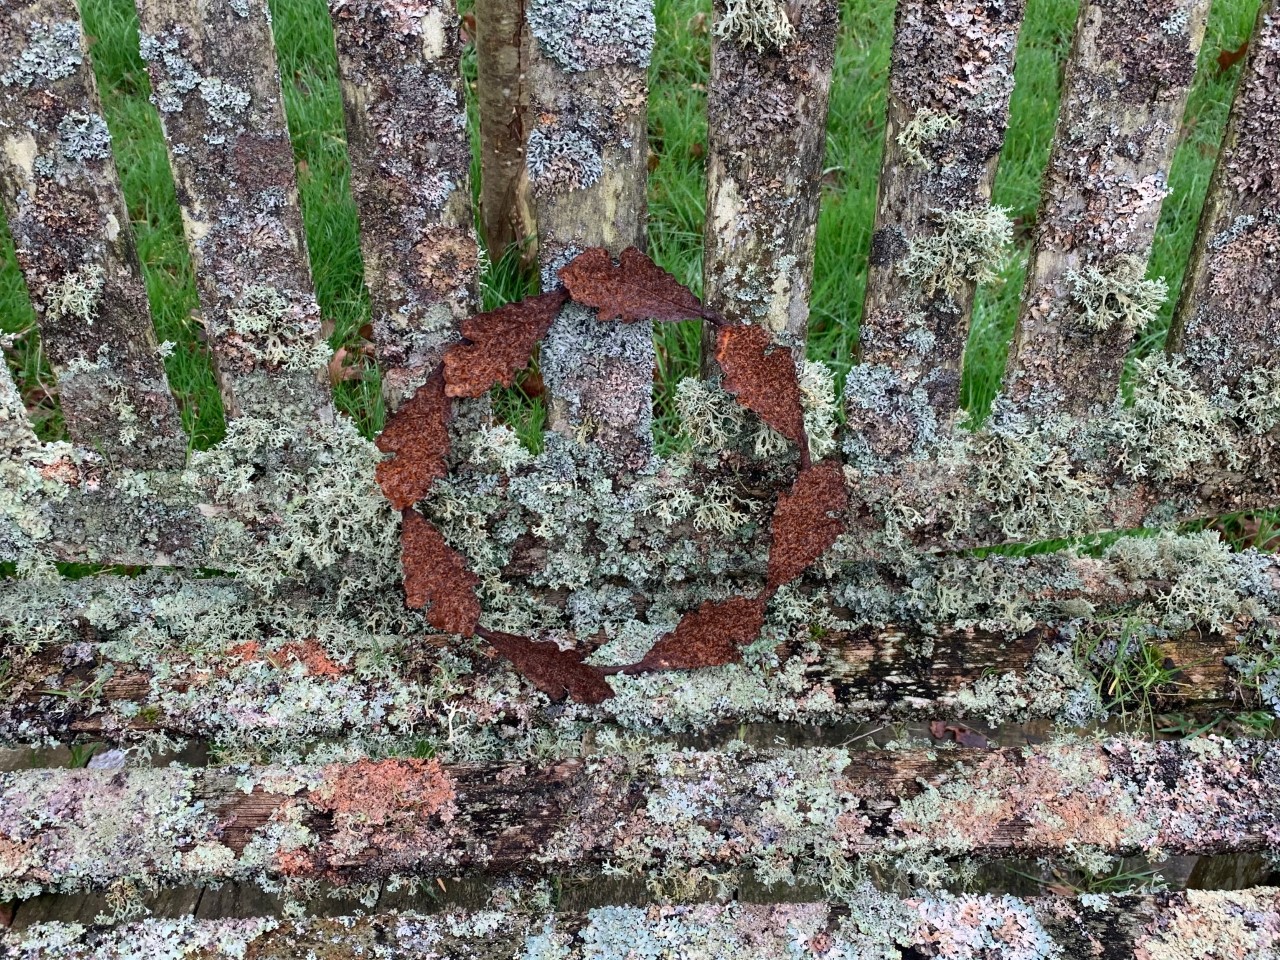 Lichen on garden bench